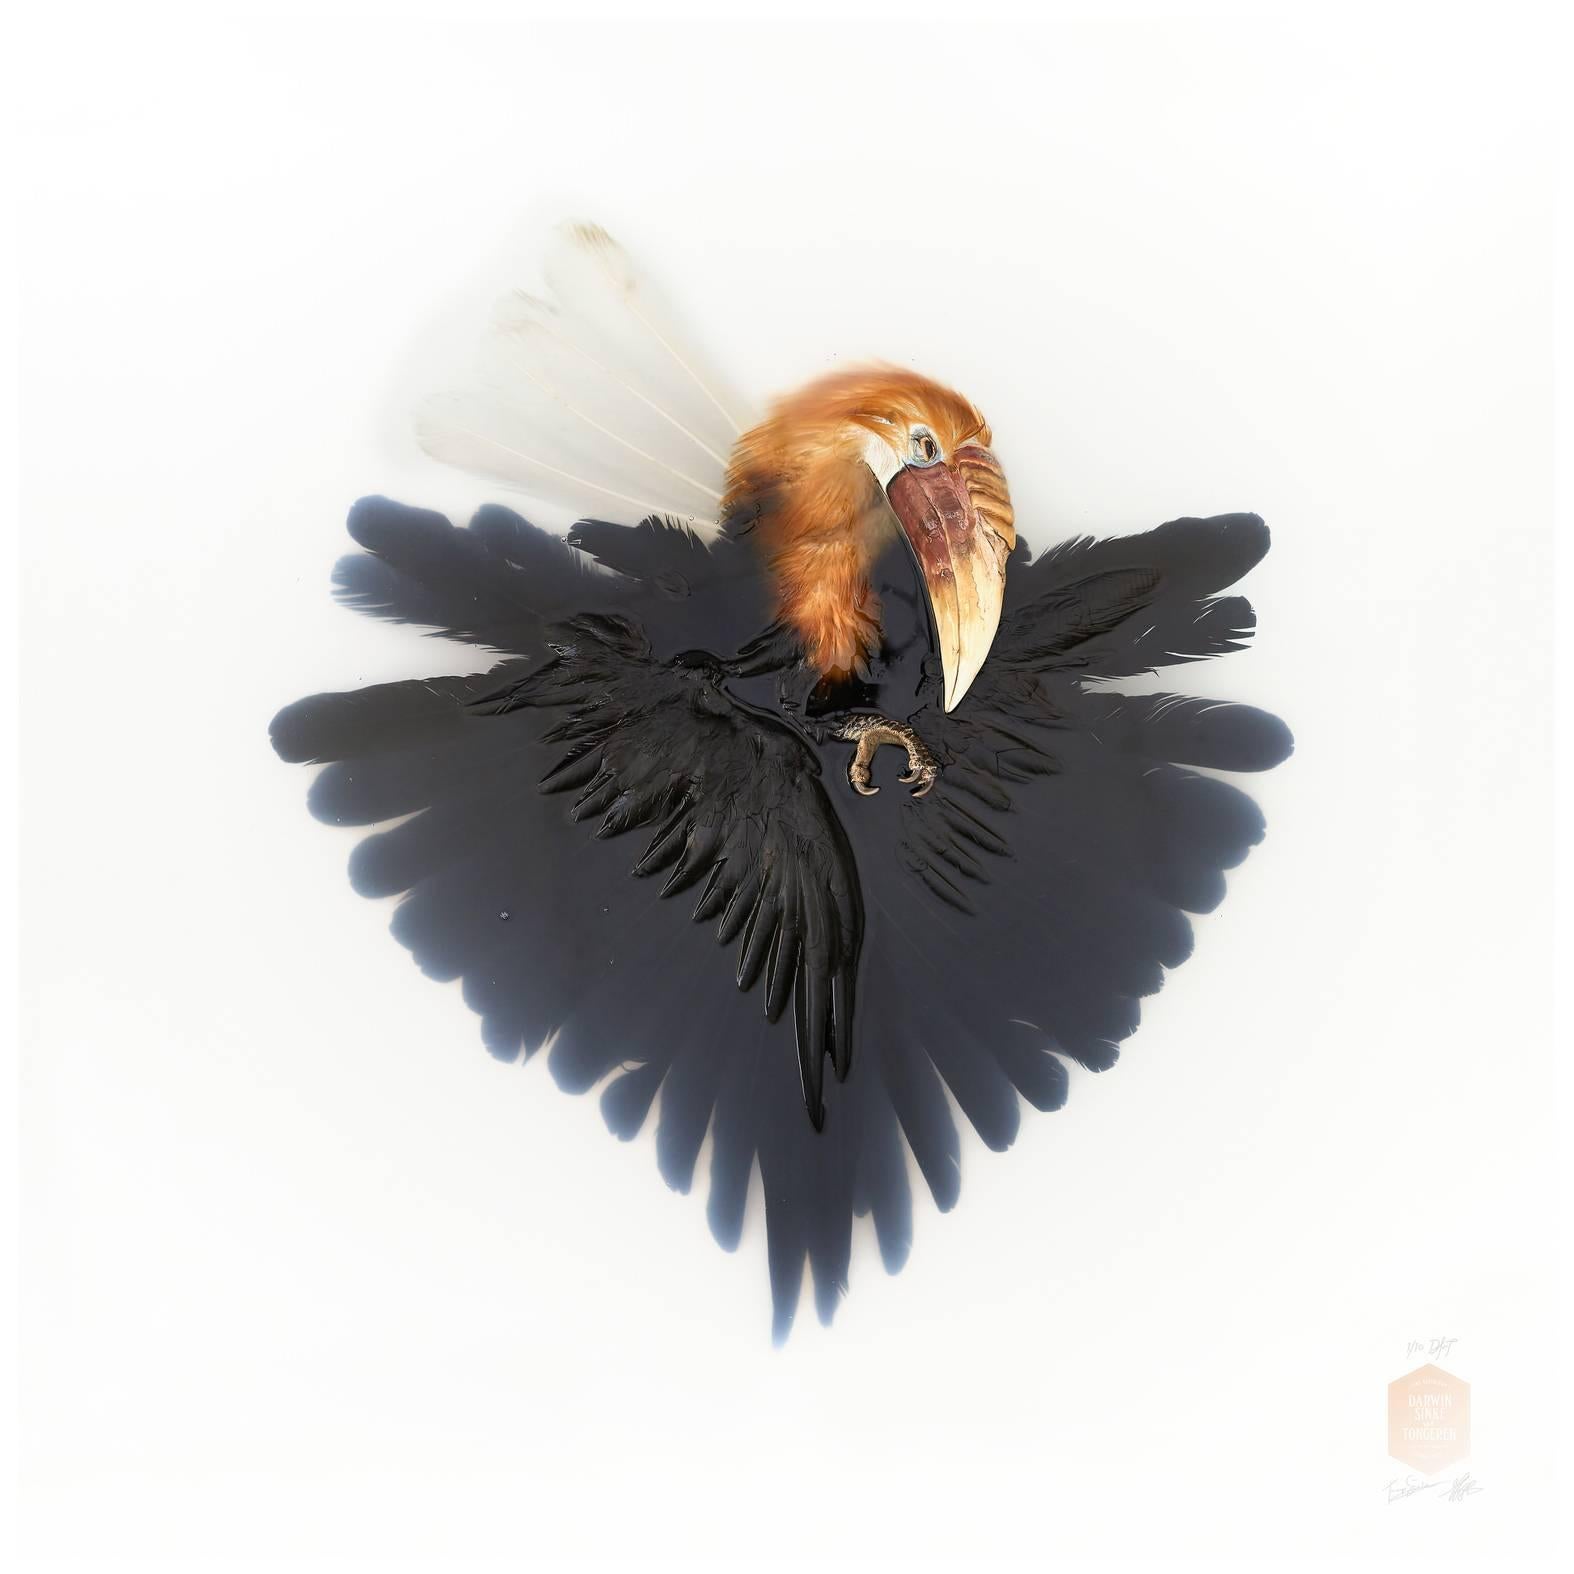 Kunstdruck mit dem Titel „Unbekannte Pose von Wreathed Hornbill“ von Sinke & van Tongeren